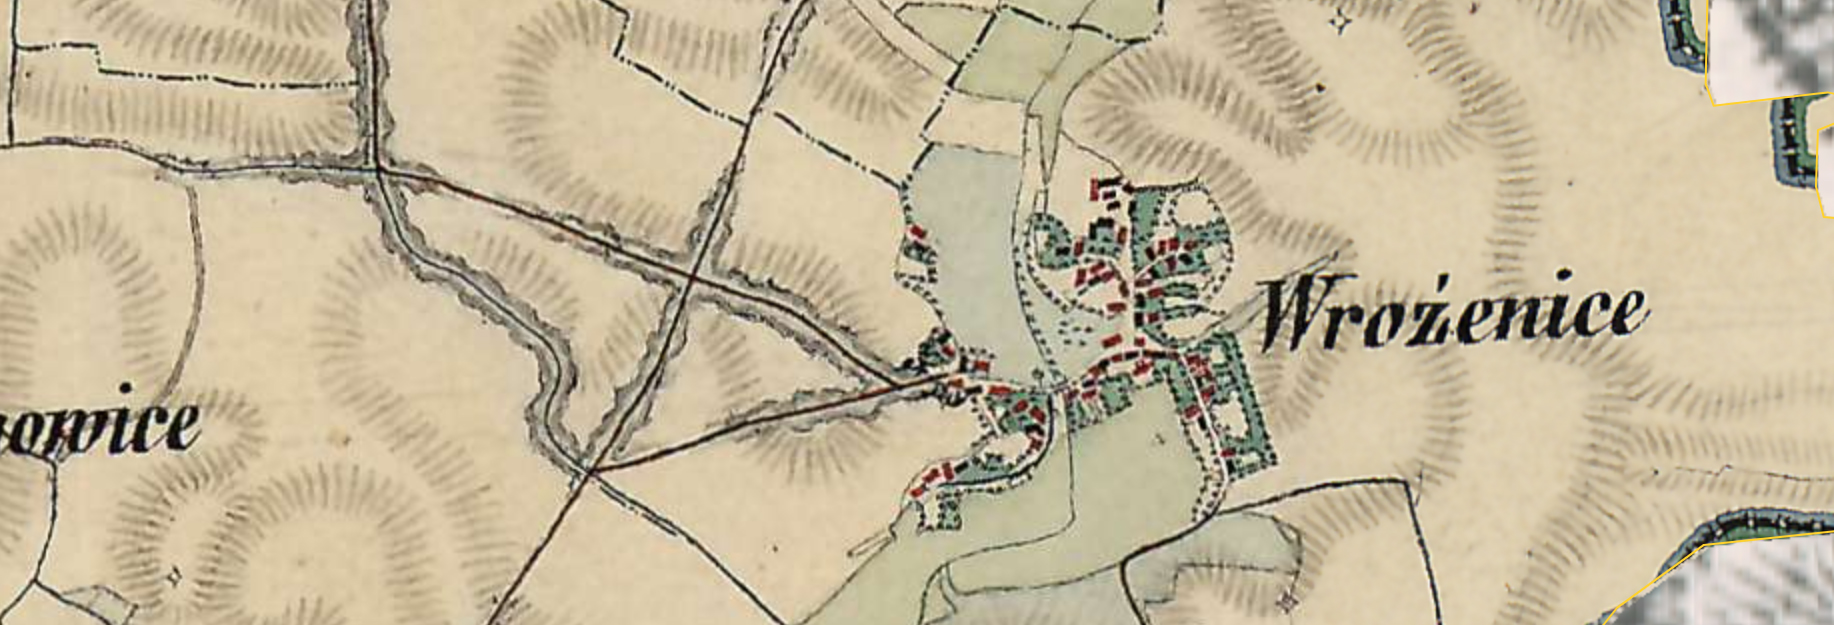 Mapa Wróżenic w XIX w. wraz z siecią wąwozów kopia